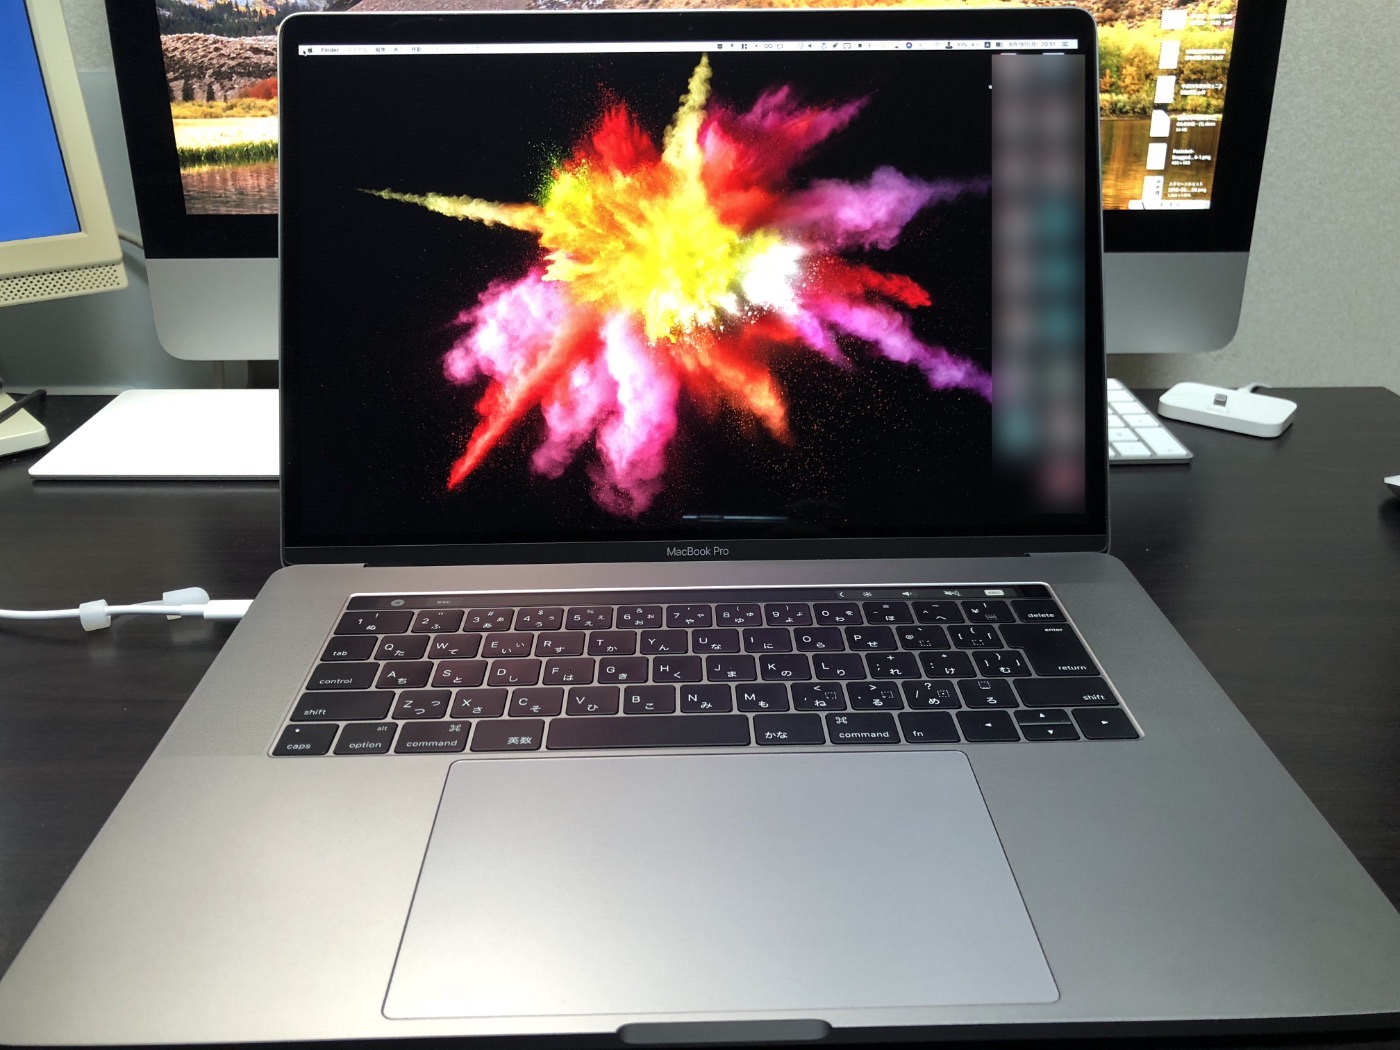 [Mac]バタフライキーボード修正プログラムで修理依頼していたMacBook Proが戻ってきました